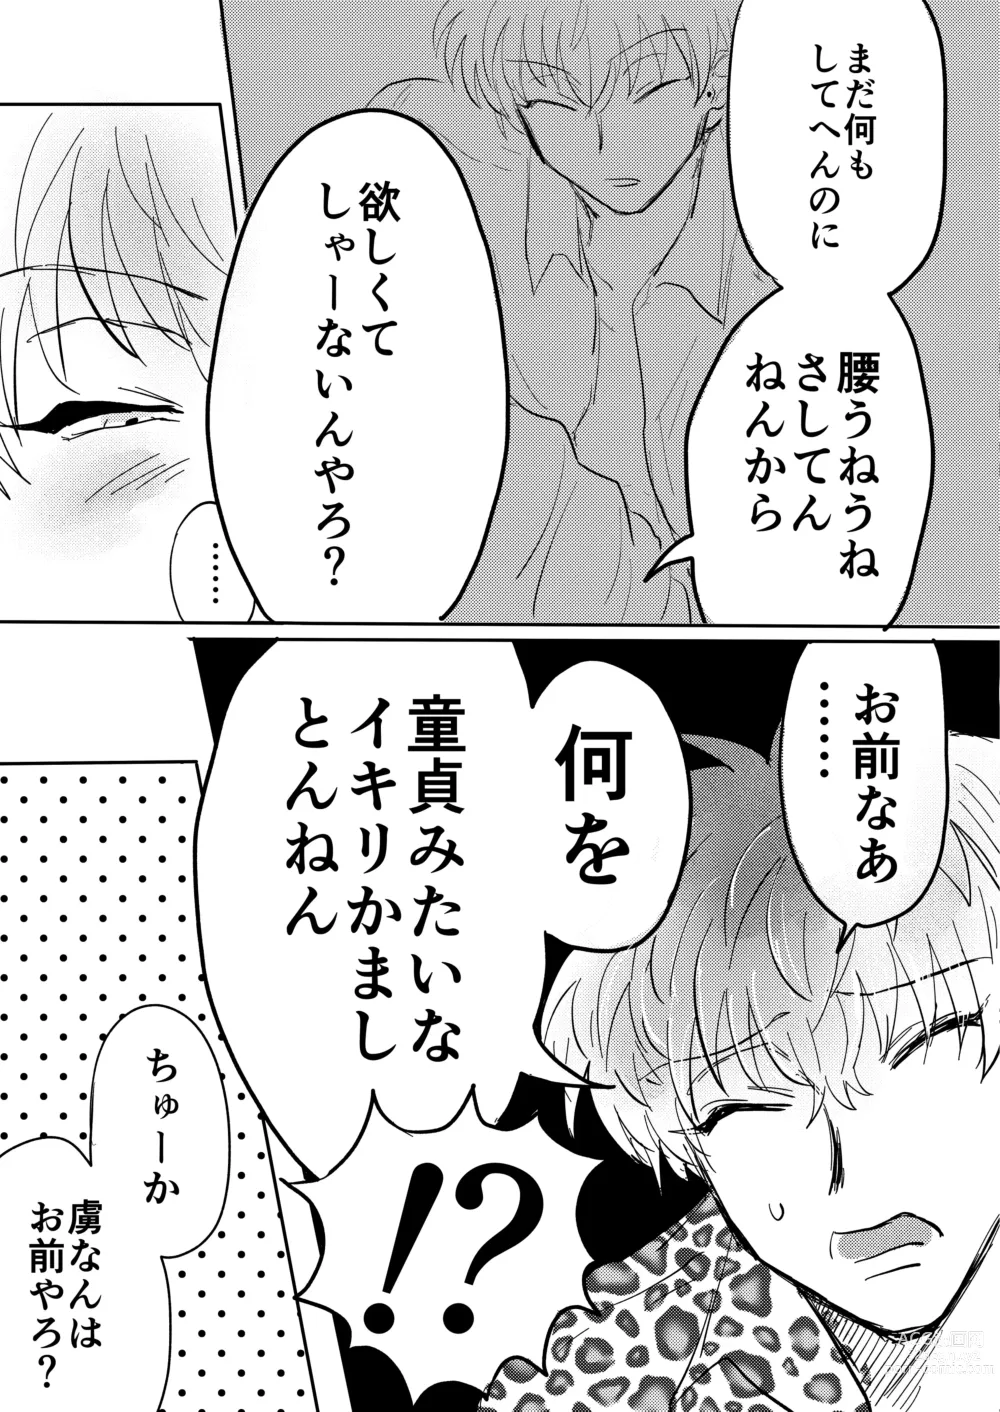 Page 9 of doujinshi Dare ga Omae no Toriko Yate?